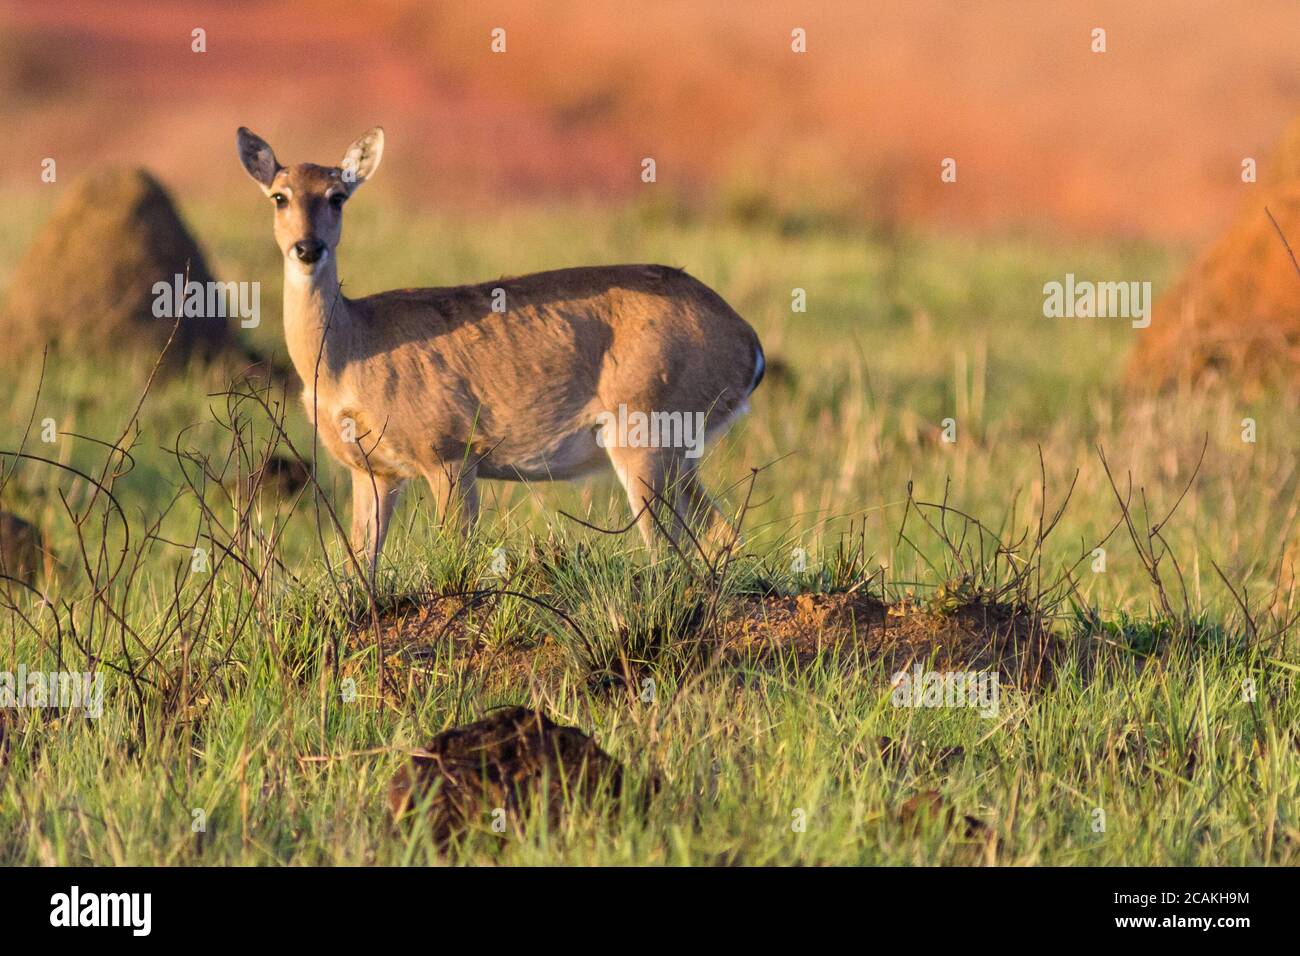 Female pampas deer in the cerrado biome of Minas Gerais - Brazil Stock Photo